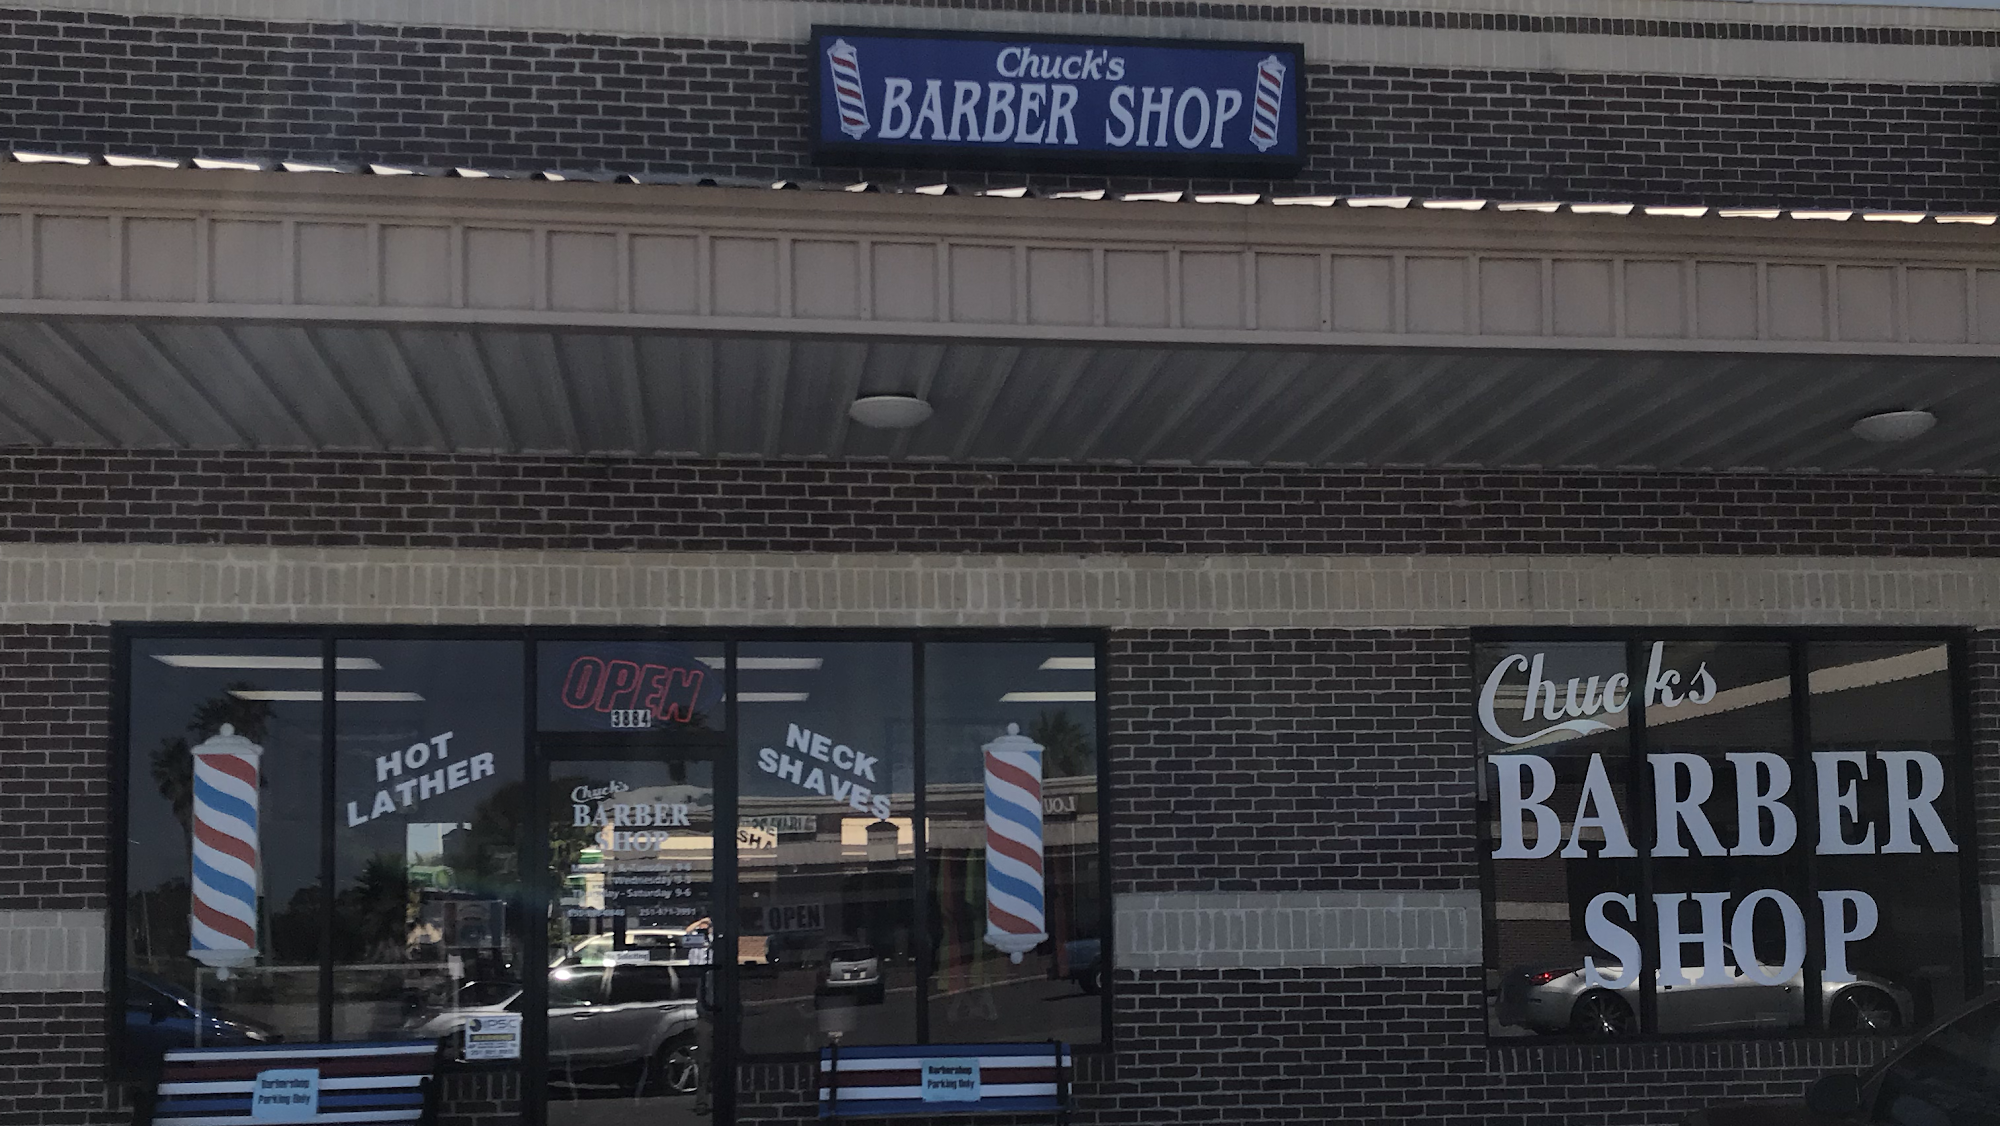 Nick's Barber Shop